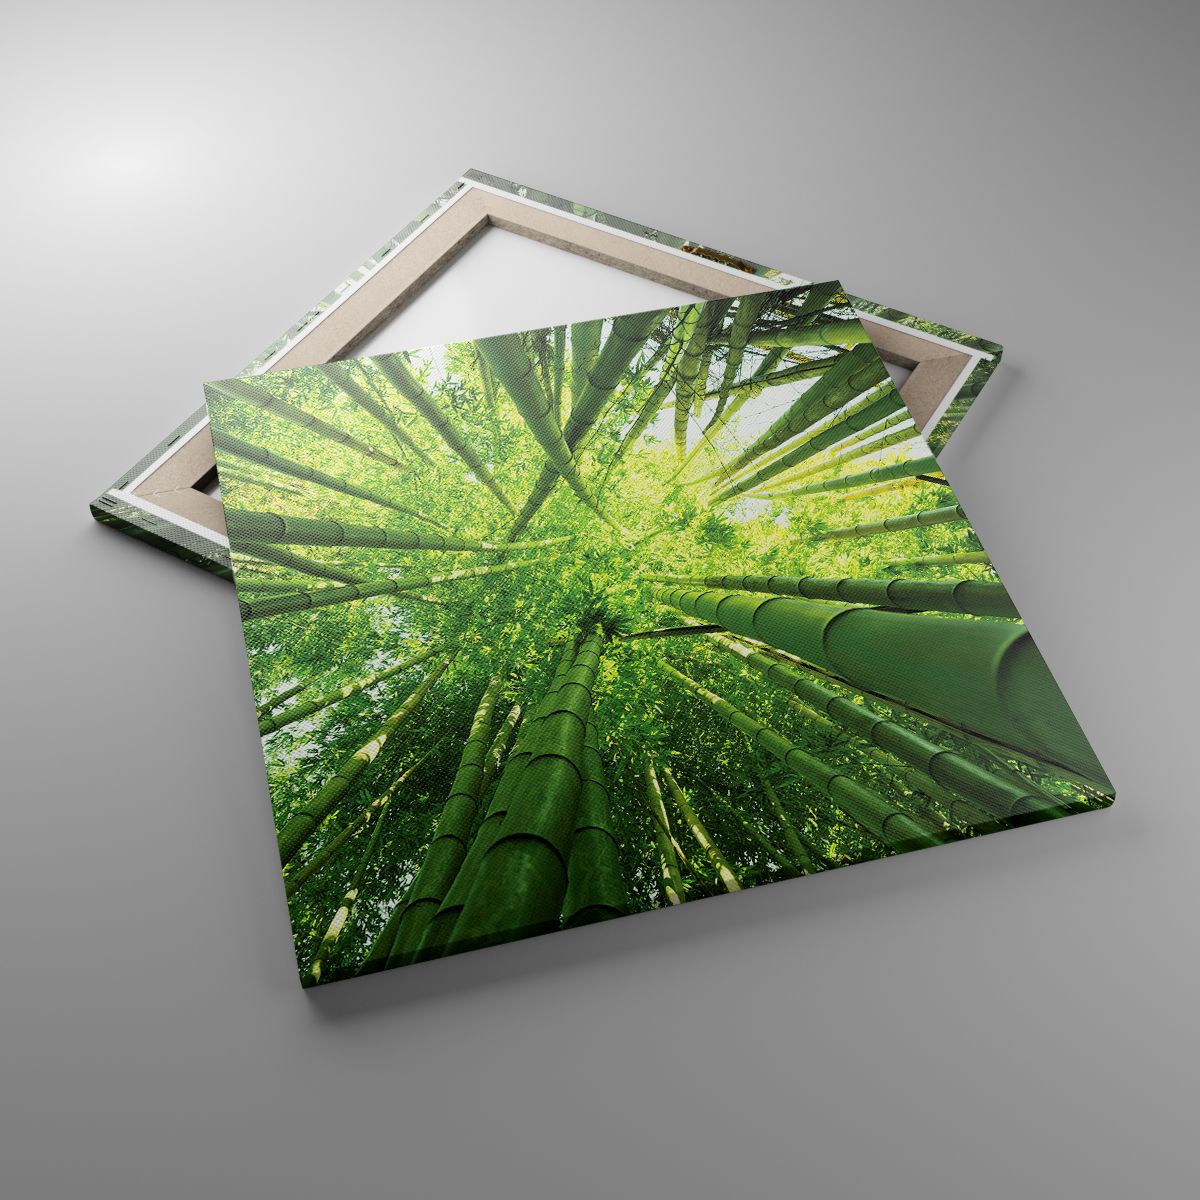 Obrazy Las Bambusowy, Obrazy Dżungla, Obrazy Bambus, Obrazy Natura, Obrazy Japonia